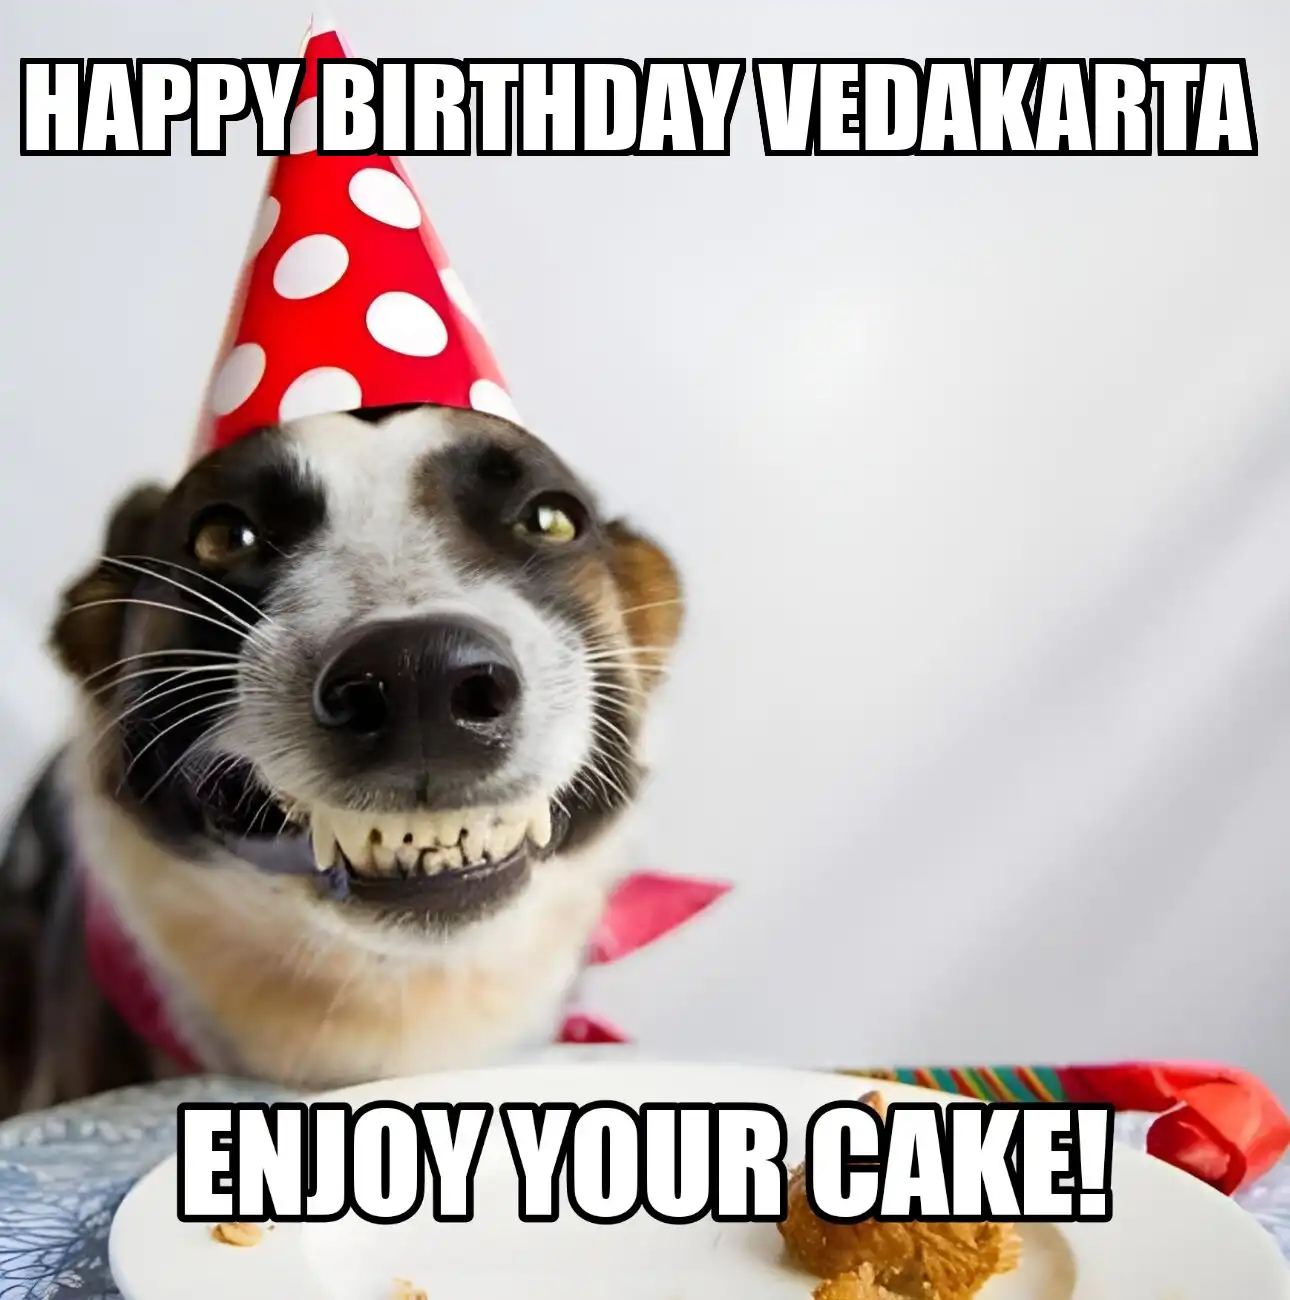 Happy Birthday Vedakarta Enjoy Your Cake Dog Meme